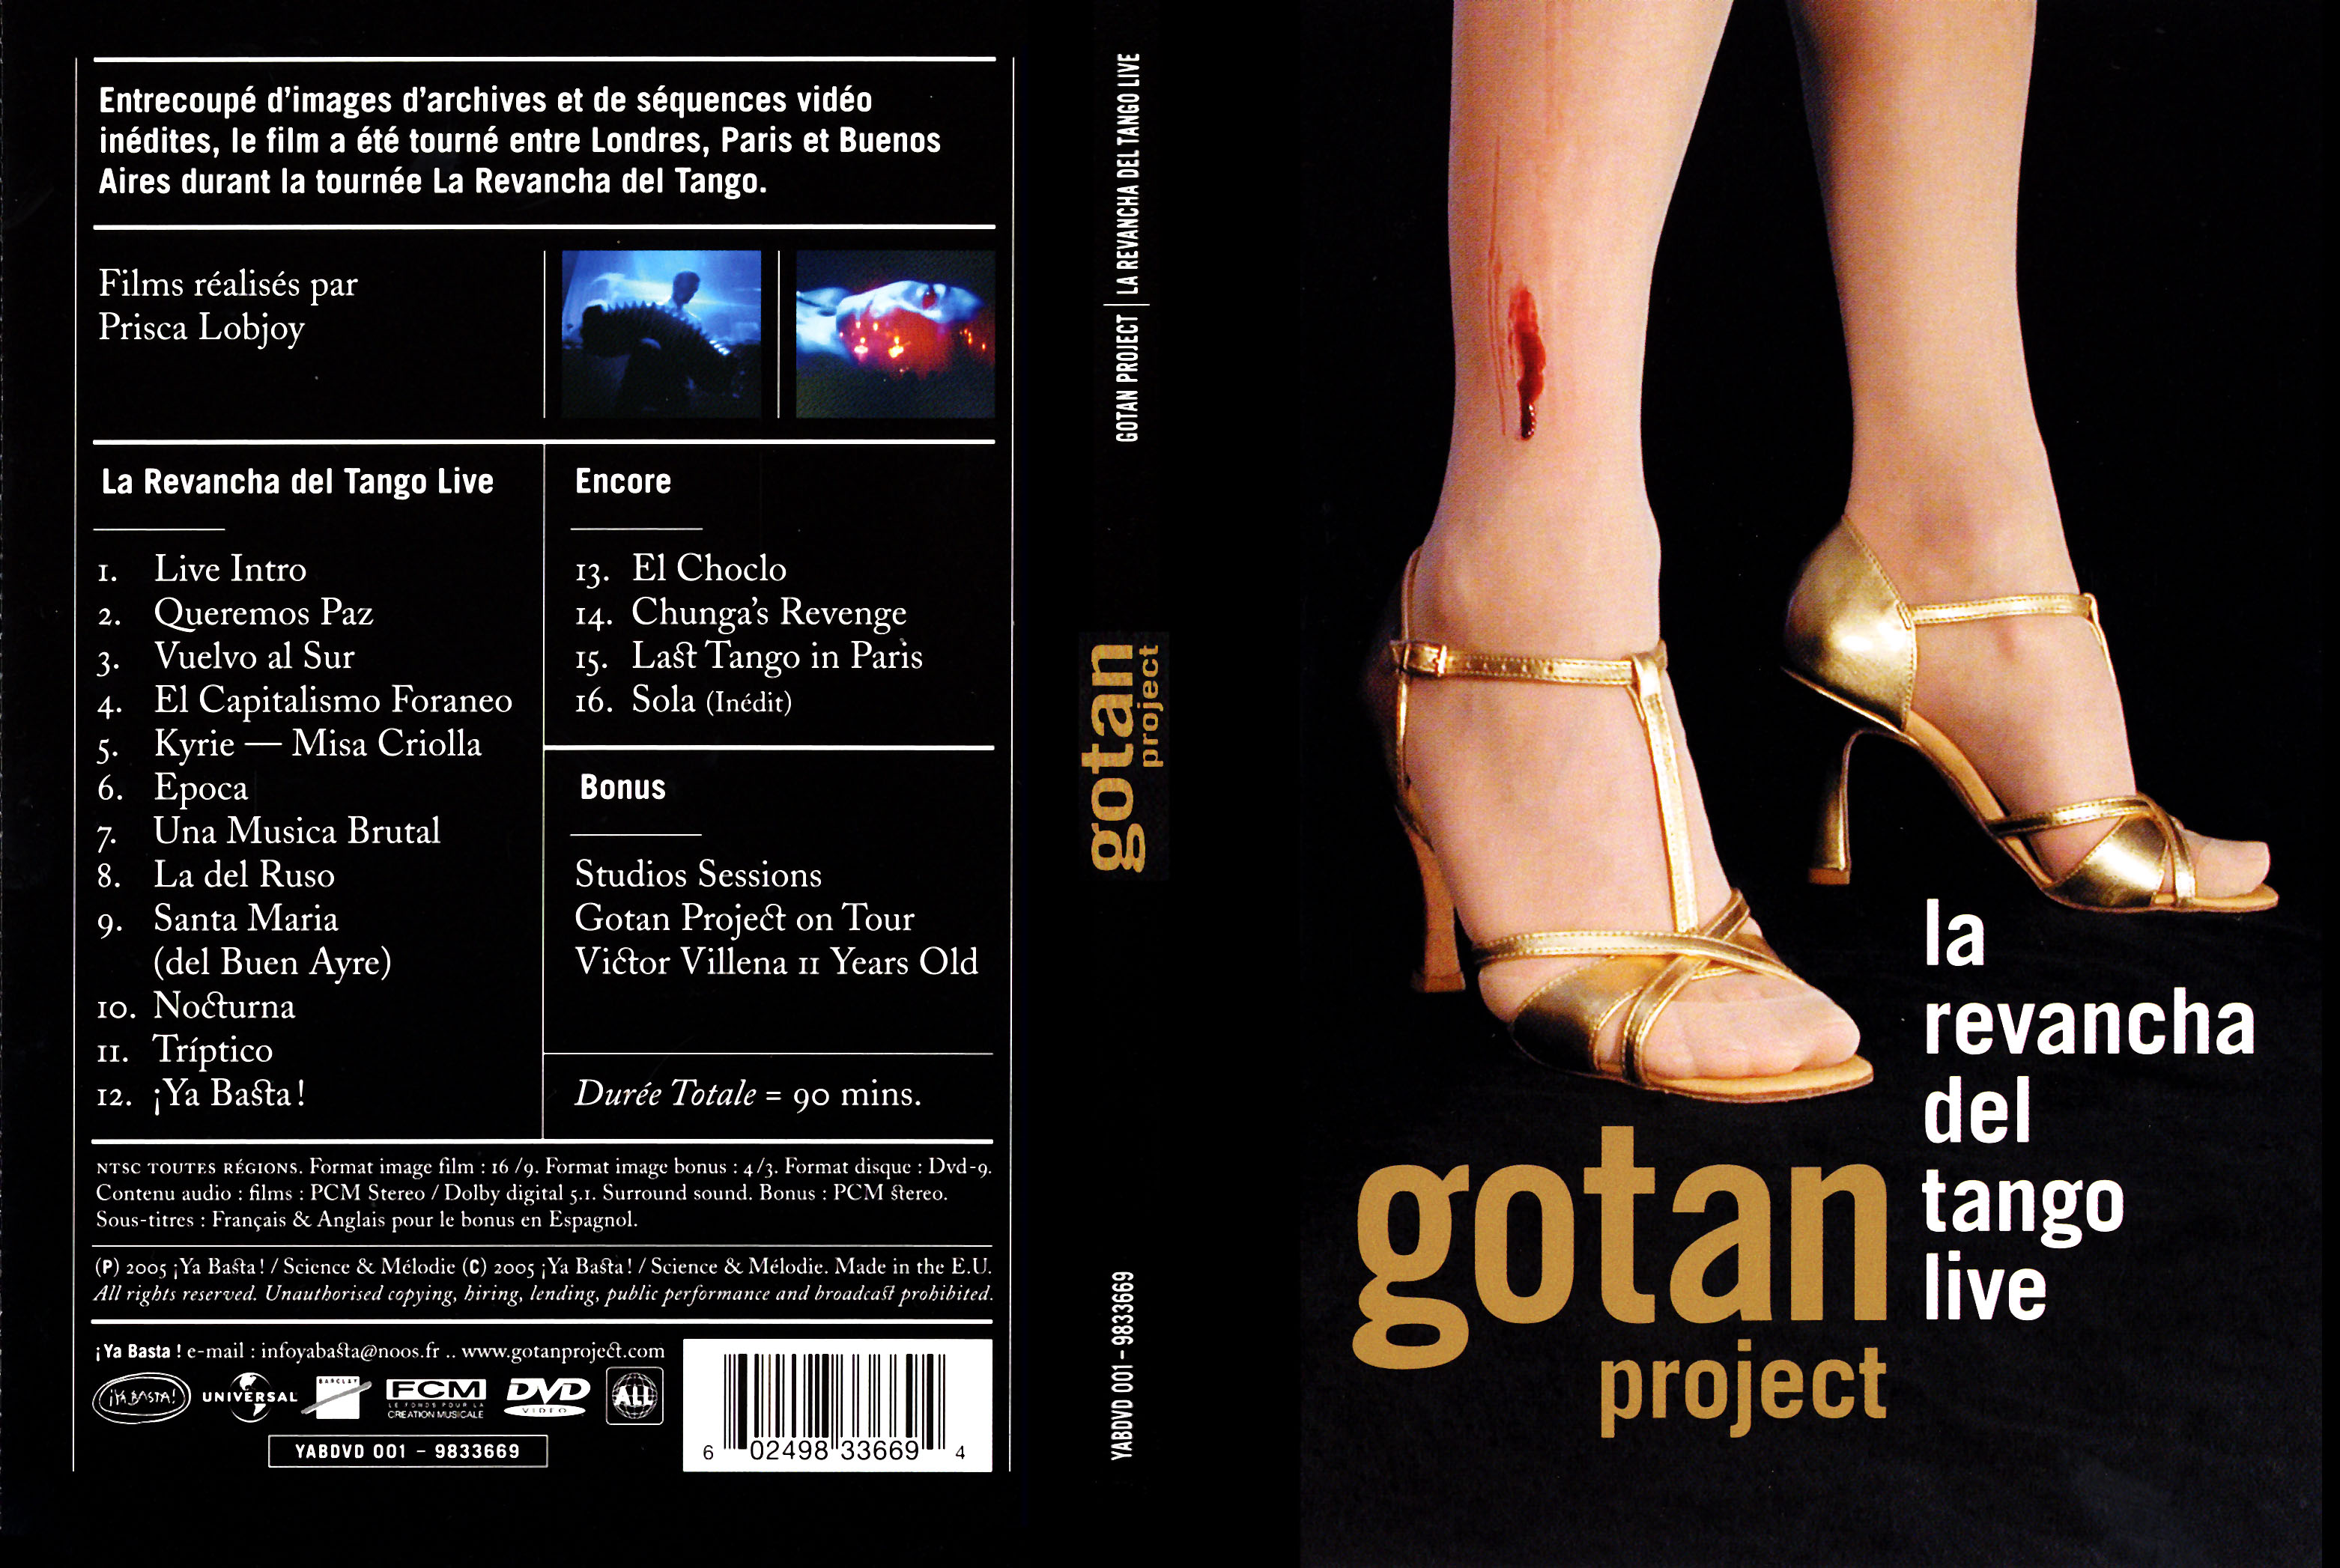 Jaquette DVD Gotan project - la revancha del tango